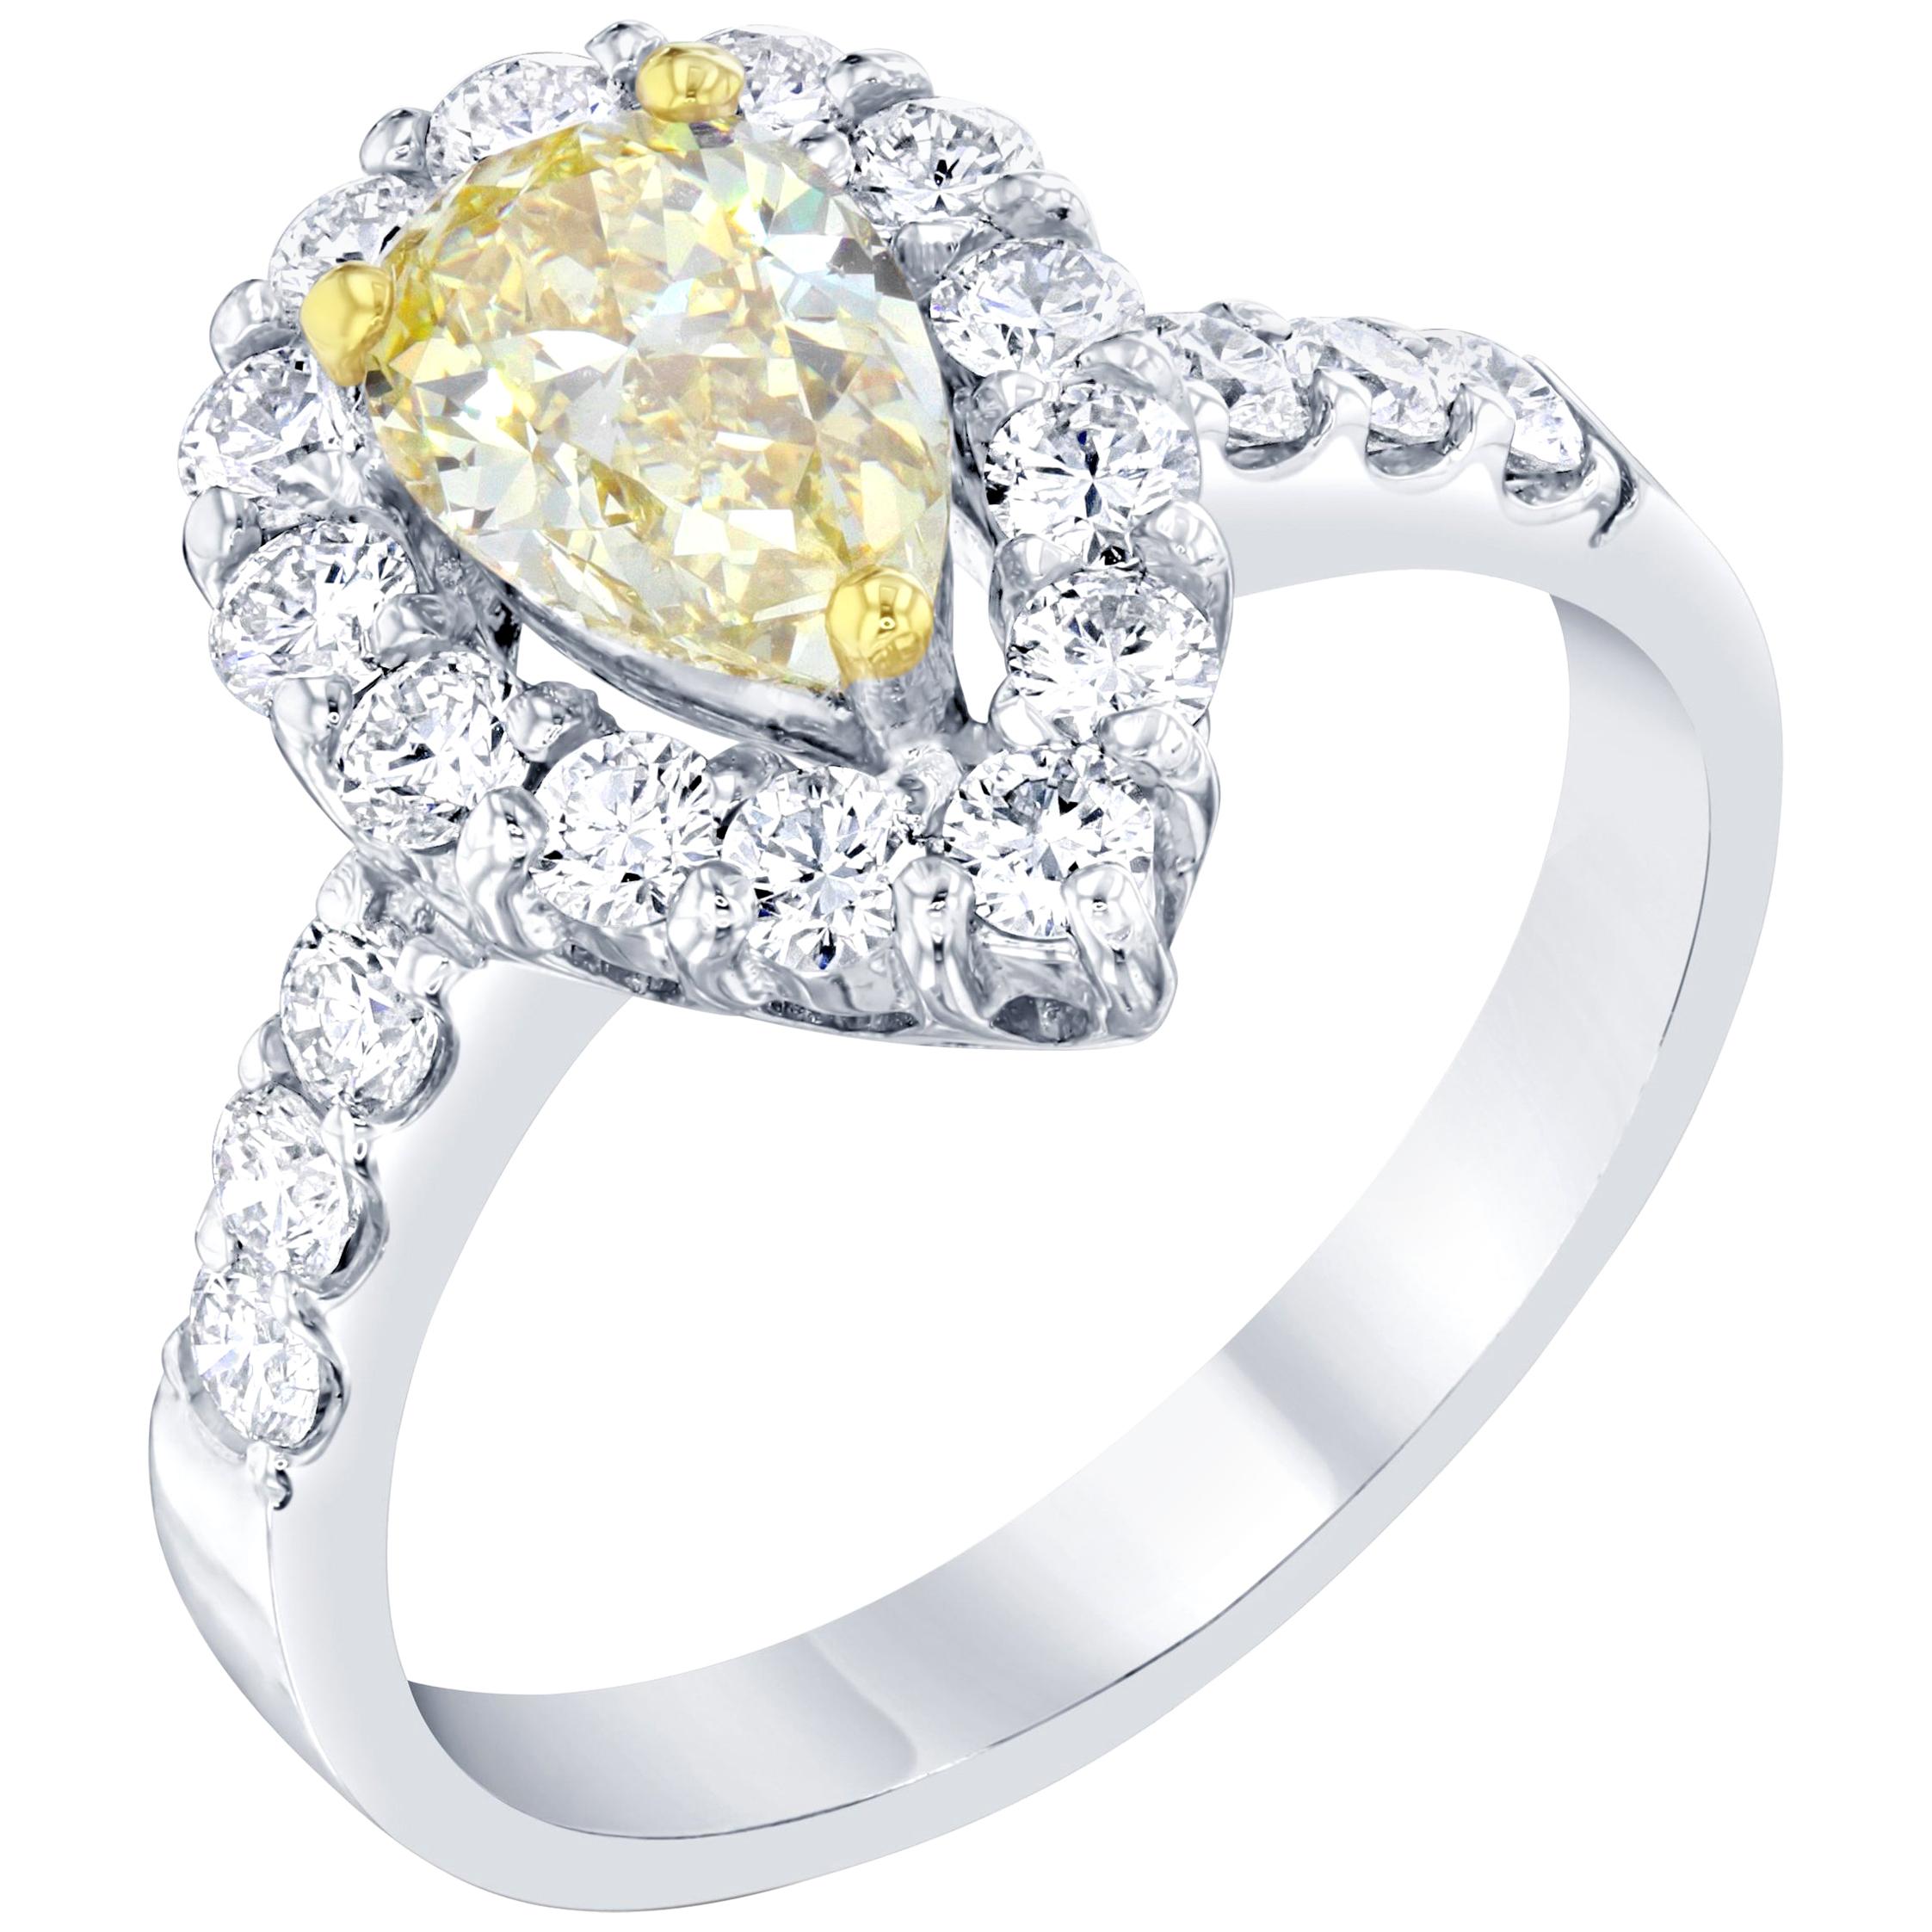 1.81 Carat Fancy Yellow Diamond 18 Karat White Gold Engagement Ring